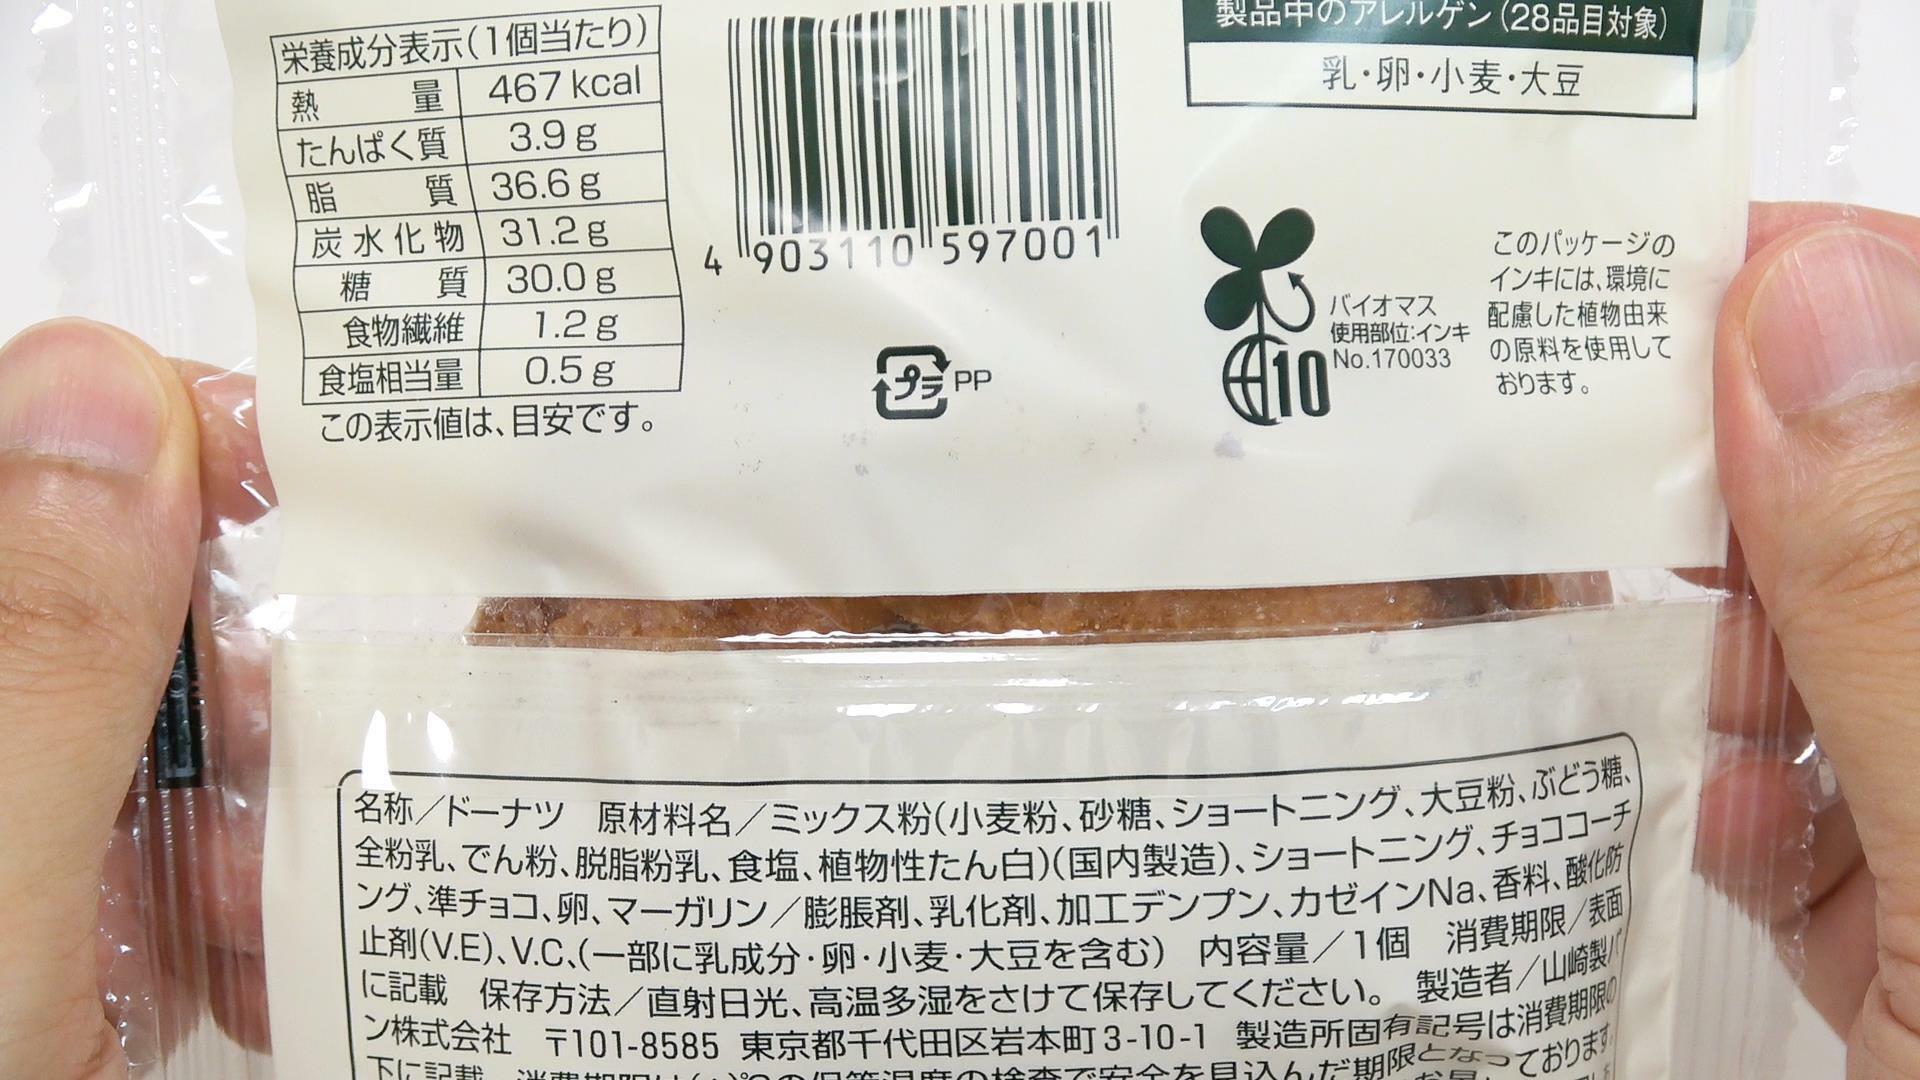 ファミマ新発売のスヌーピーチョコチップドーナツ原材料名と栄養成分表示